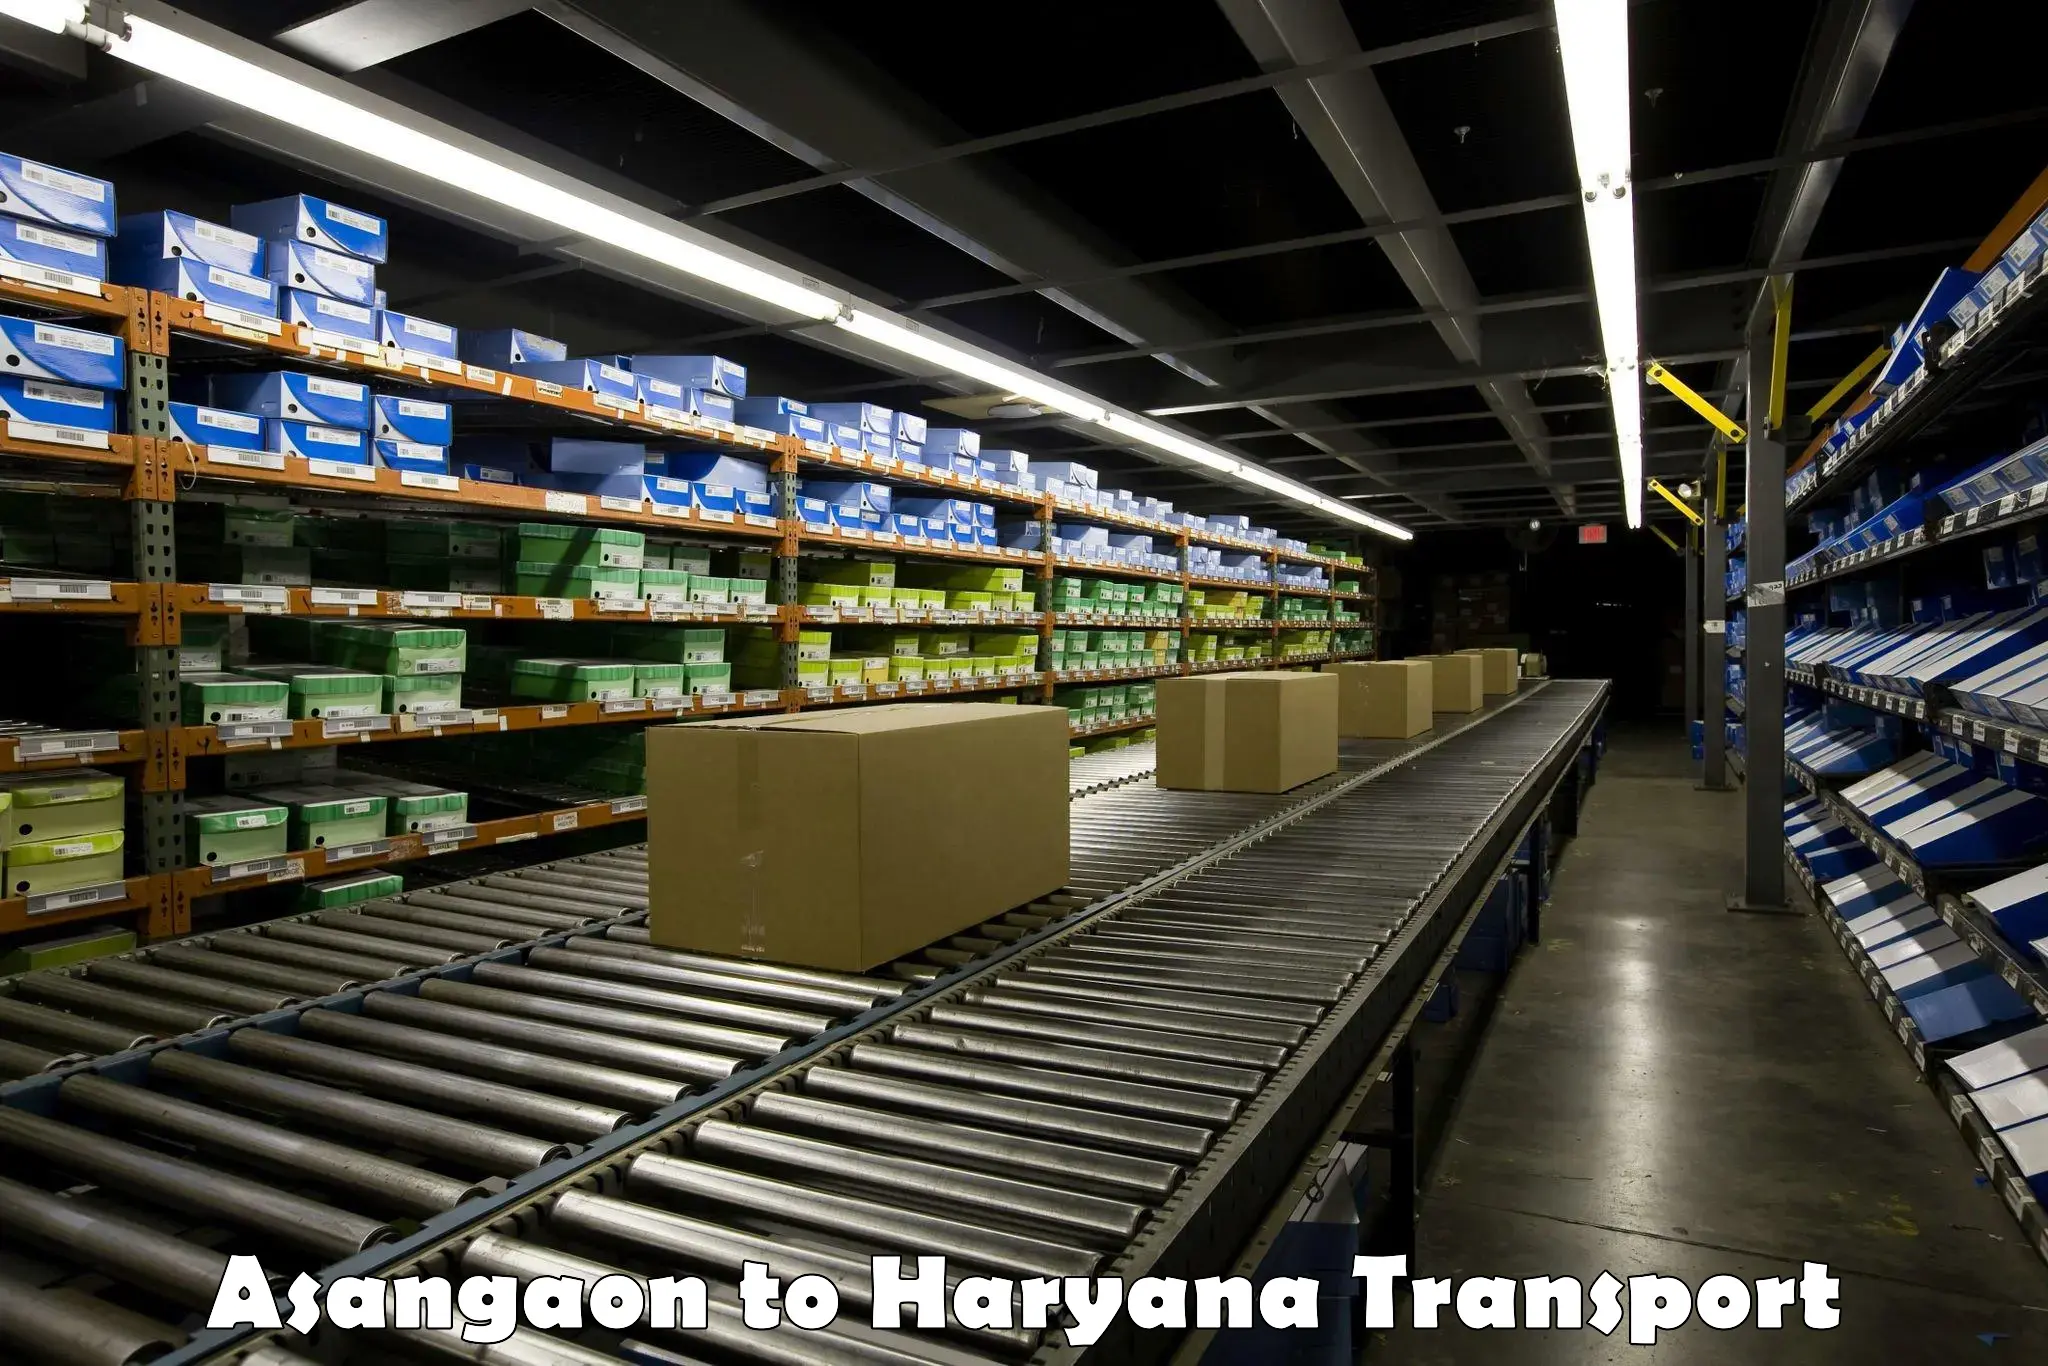 Furniture transport service Asangaon to Sonipat